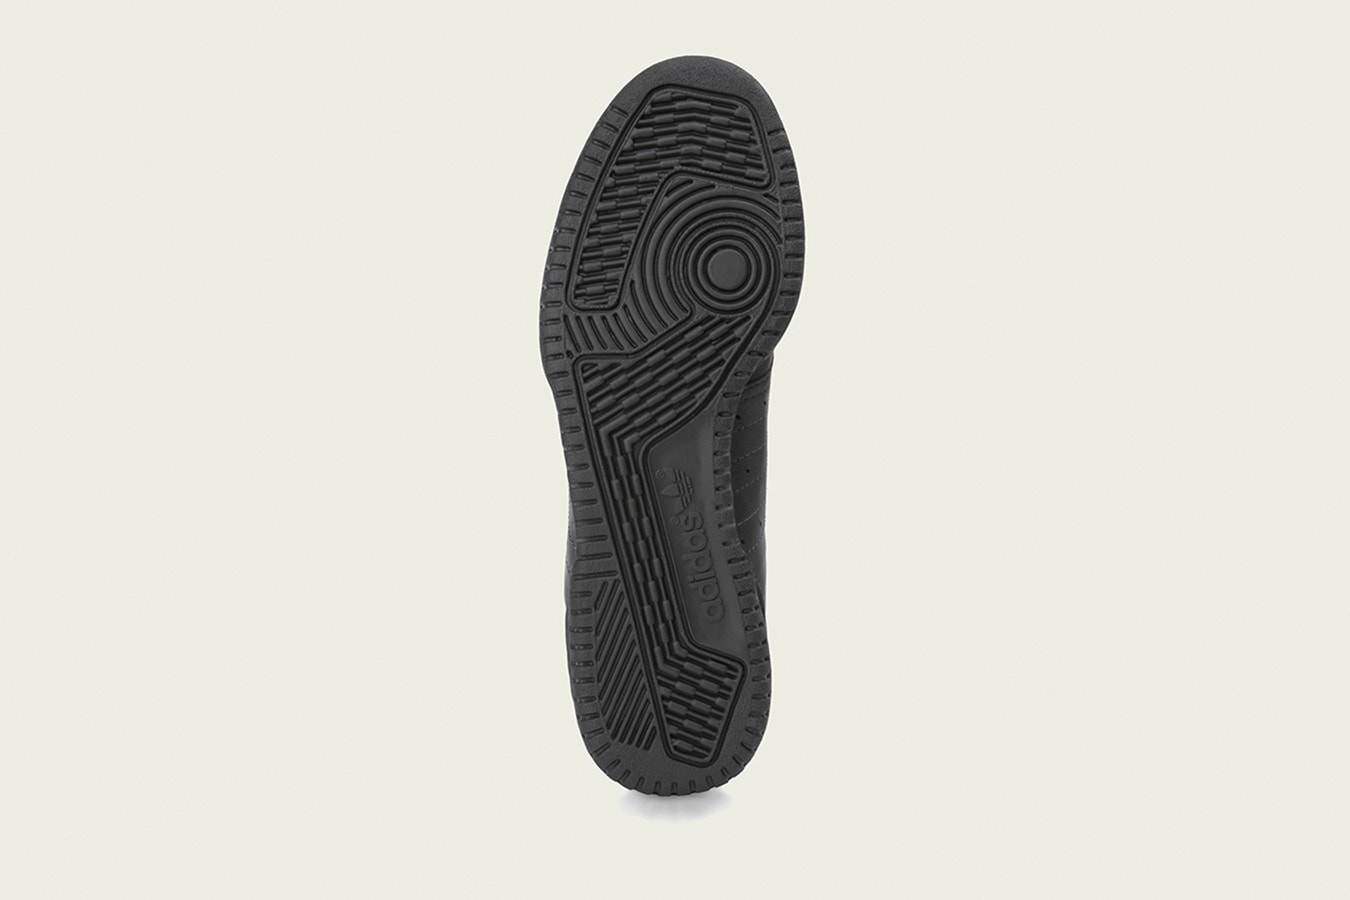 아디다스 오리지널스 이지 파워페이즈 코어 블랙 칸예 웨스트 국내 발매 정보 2018 adidas originals yeezy powerphase core black kanye west release information